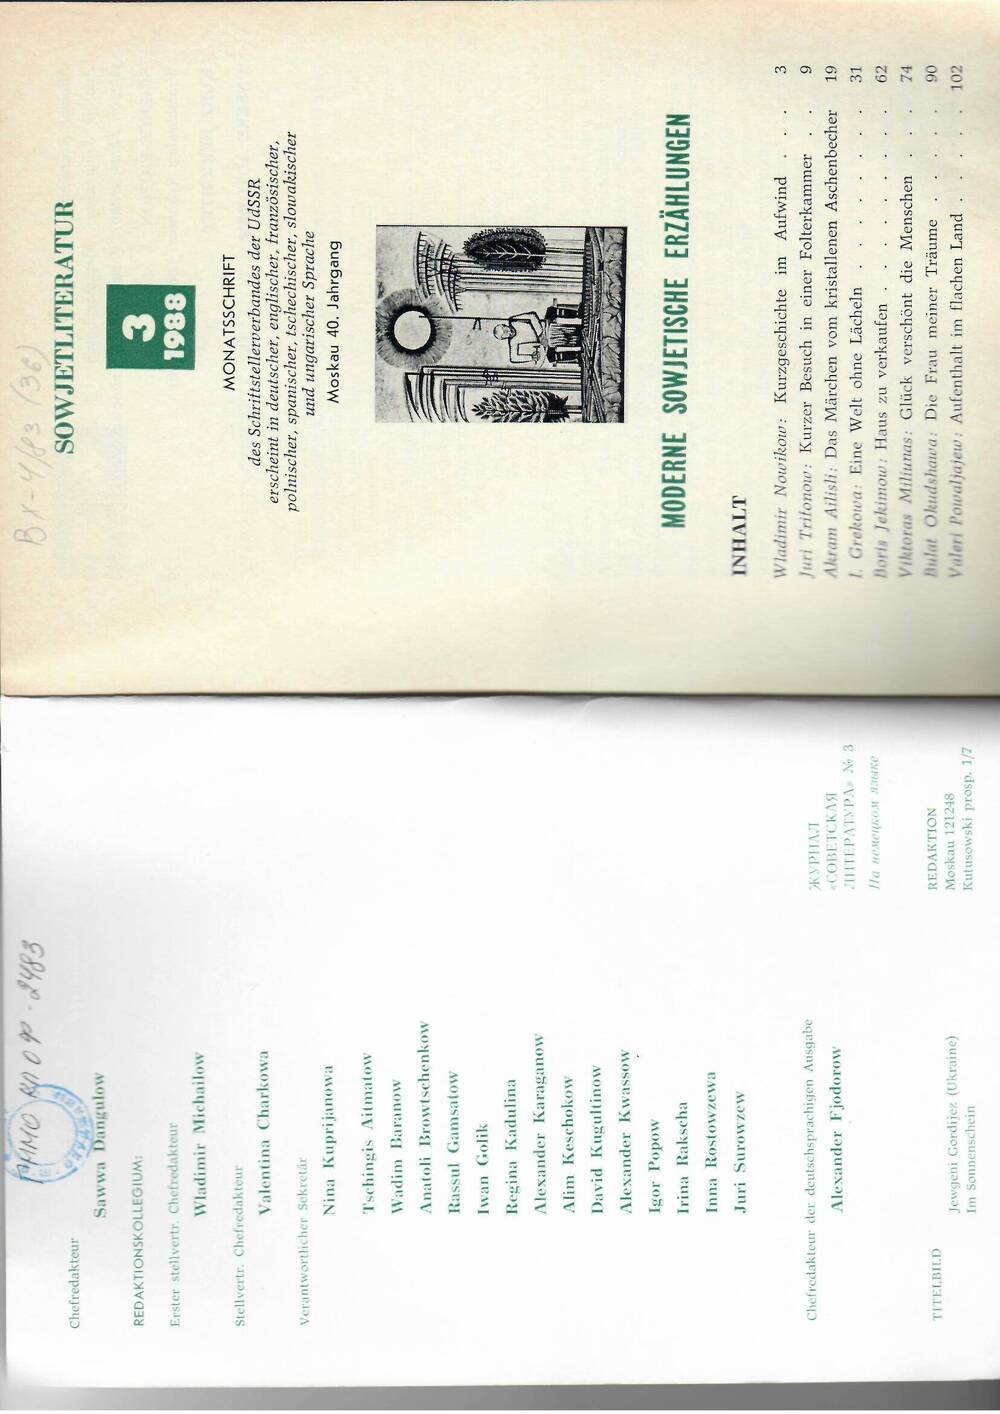 Журнал. Советская литература на немецком языке («Sowjetliteratur») № 3/ 1988.